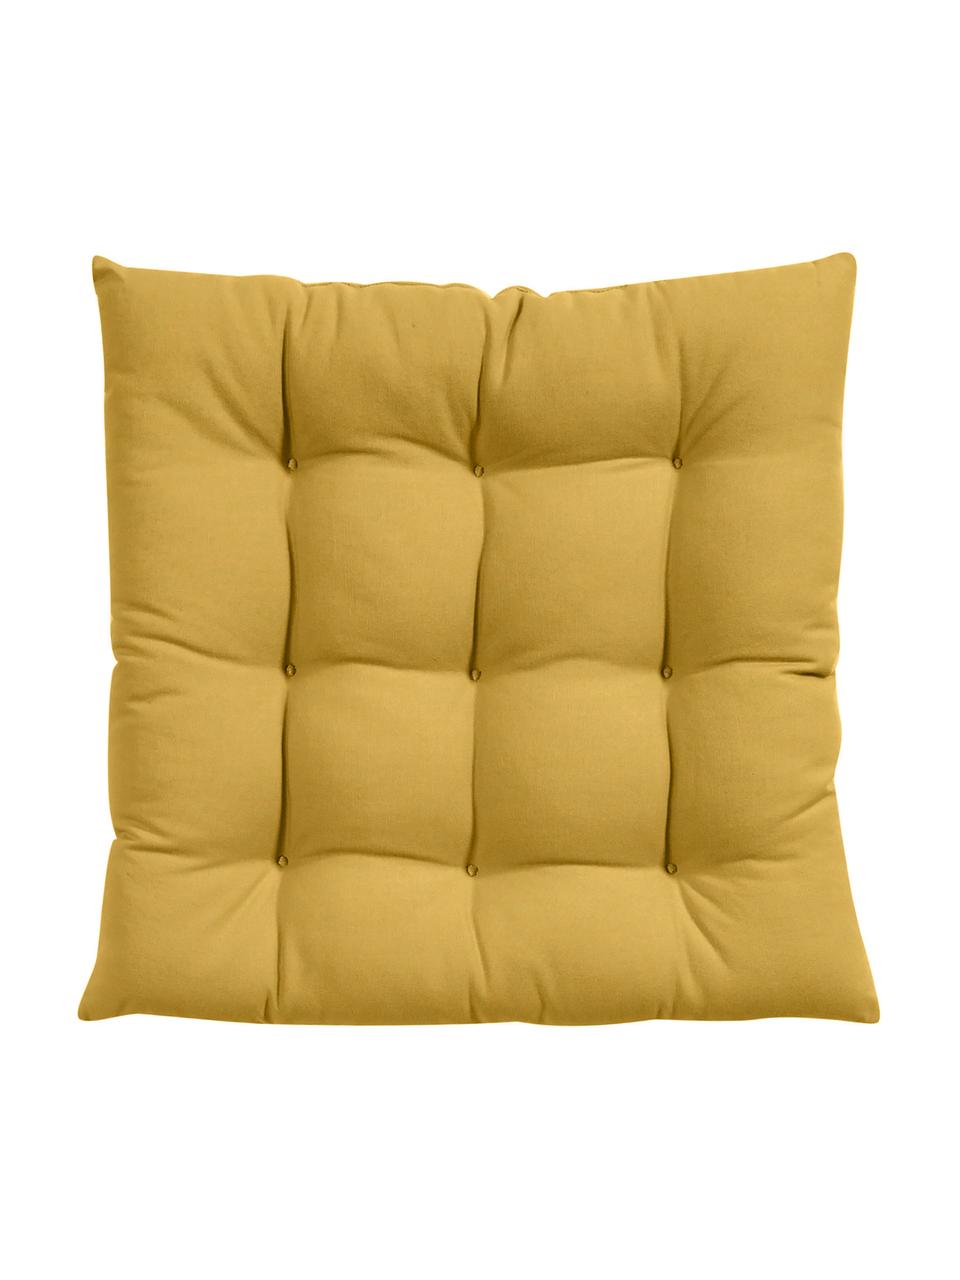 Baumwoll-Sitzkissen Ava in Gelb, Bezug: 100% Baumwolle, Gelb, B 40 x L 40 cm